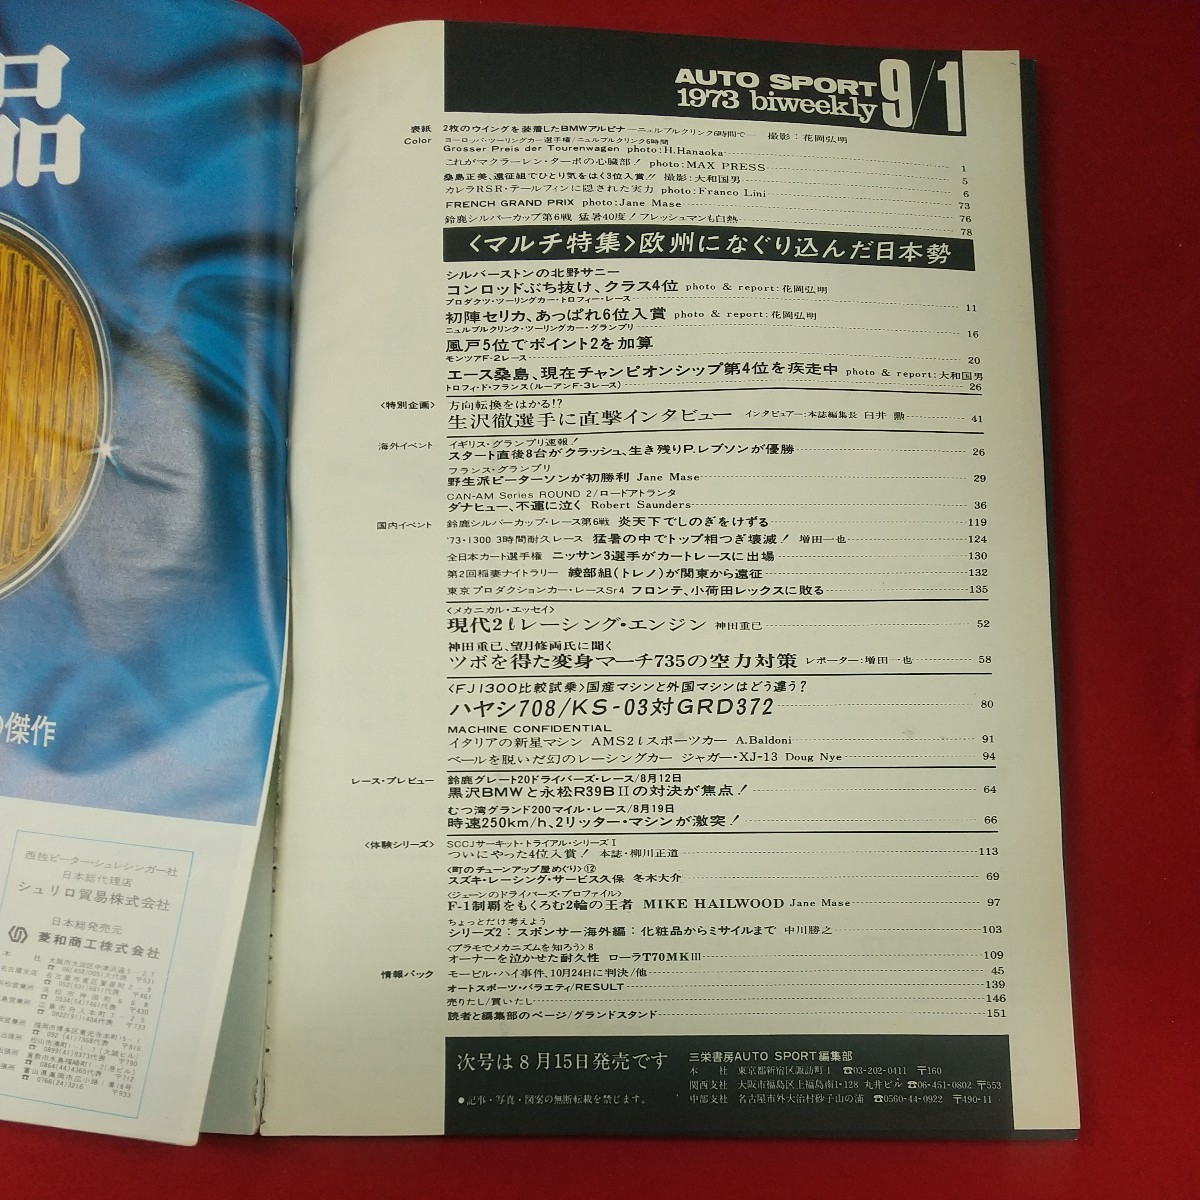 c-442※3 AUTO SPORT 1973年9月1日号 昭和48年9月1日発行 三栄書房 欧州になぐり込んだ日本勢 生沢徹に直撃インタビュー NO.125_ページ剥がれあり